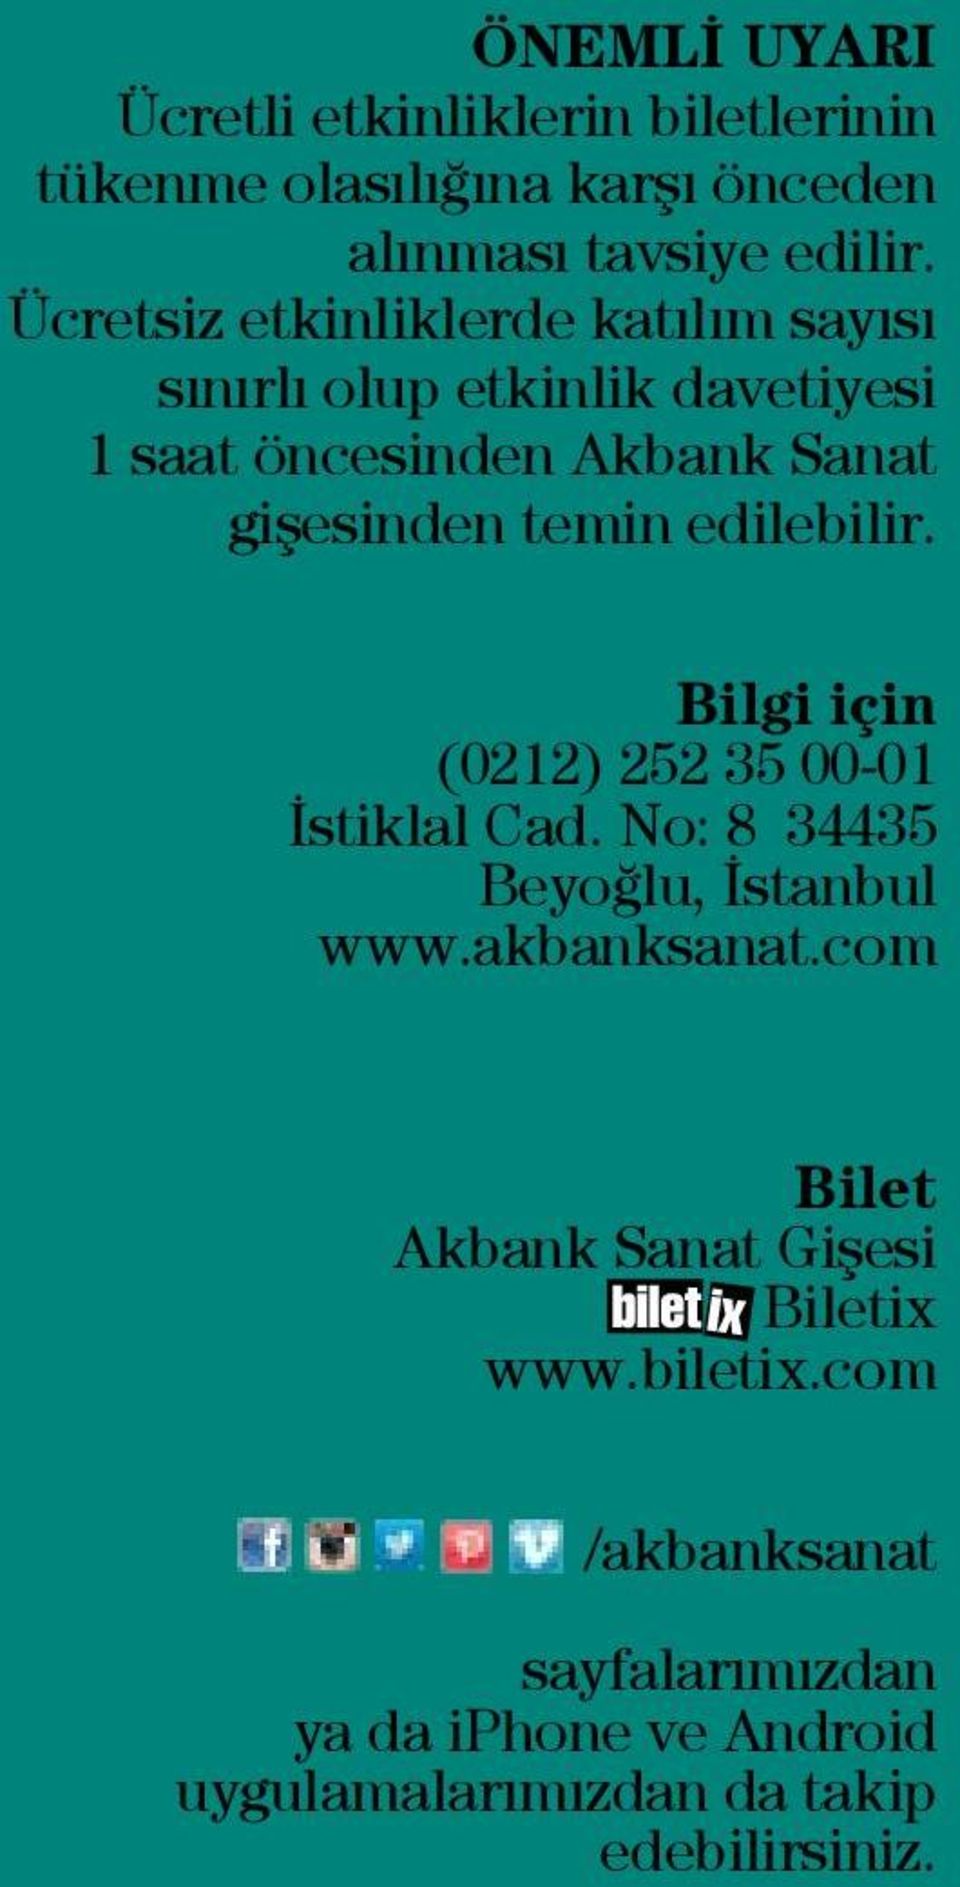 edilebilir. Bilgi için (0212) 252 35 00-01 İstiklal Cad. No: 8 34435 Beyoğlu, İstanbul www.akbanksanat.